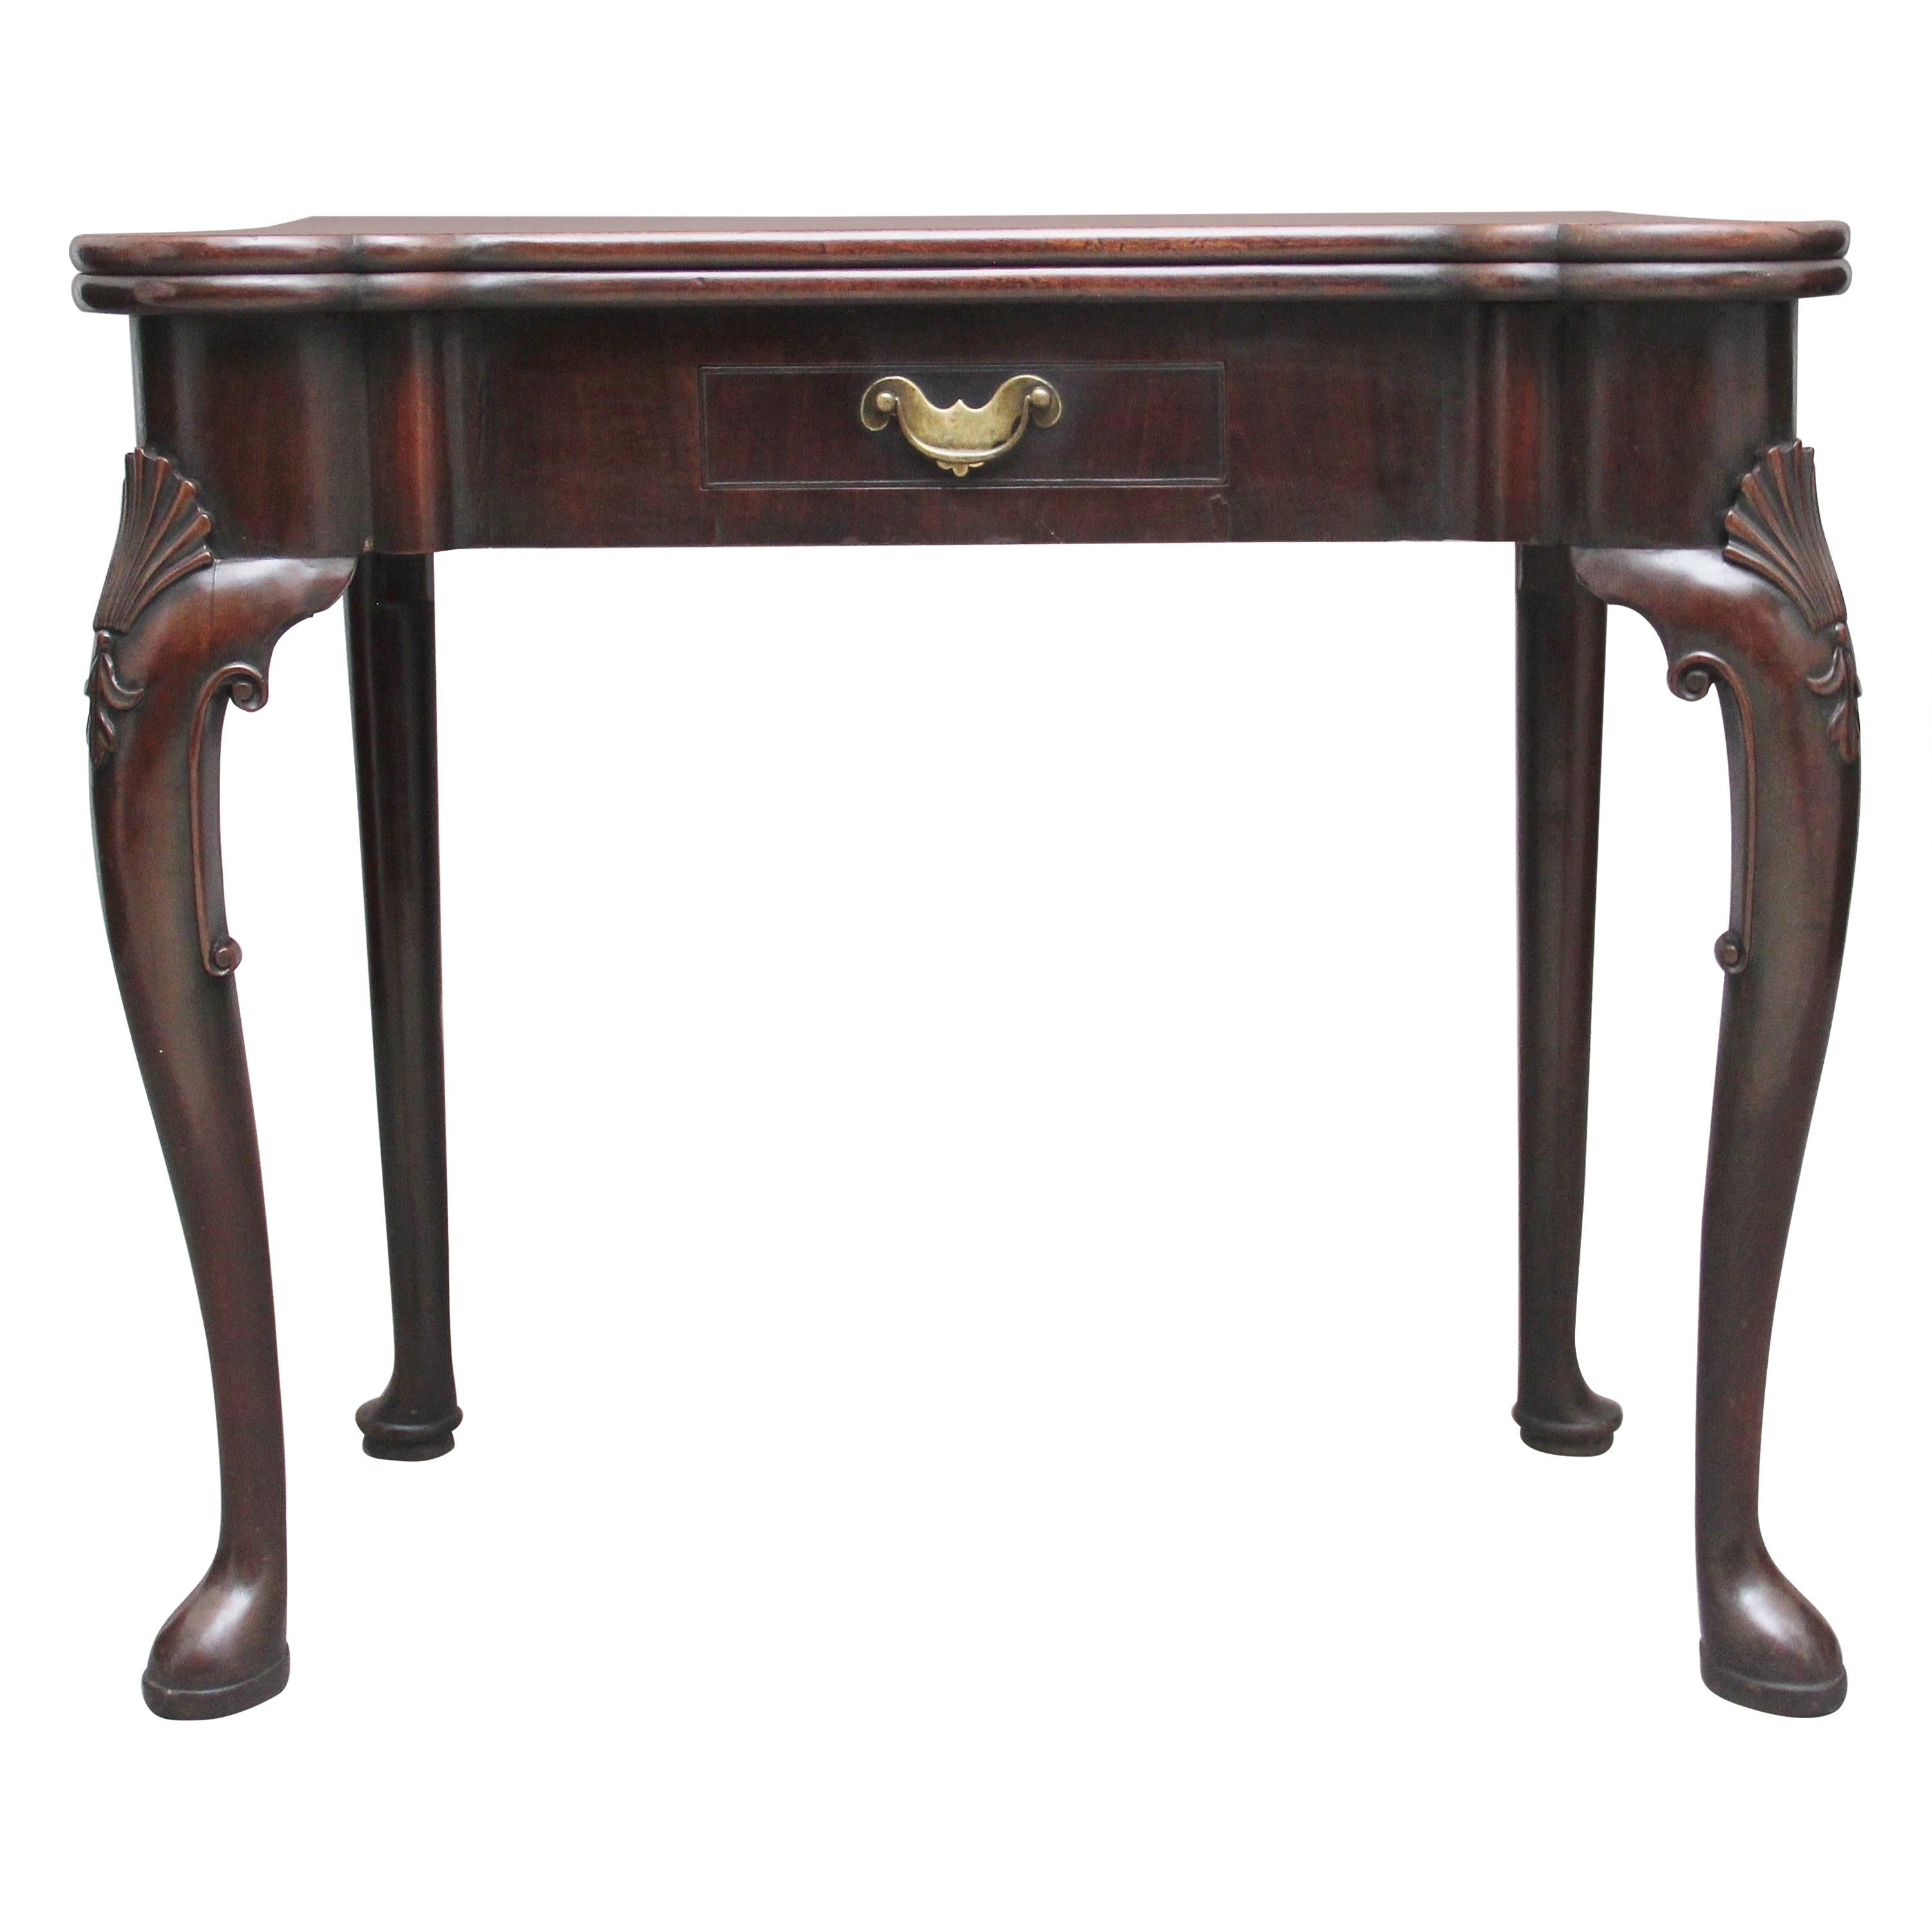 Mahagoni-Spieltisch in hervorragender Qualität aus dem frühen 18. Jahrhundert